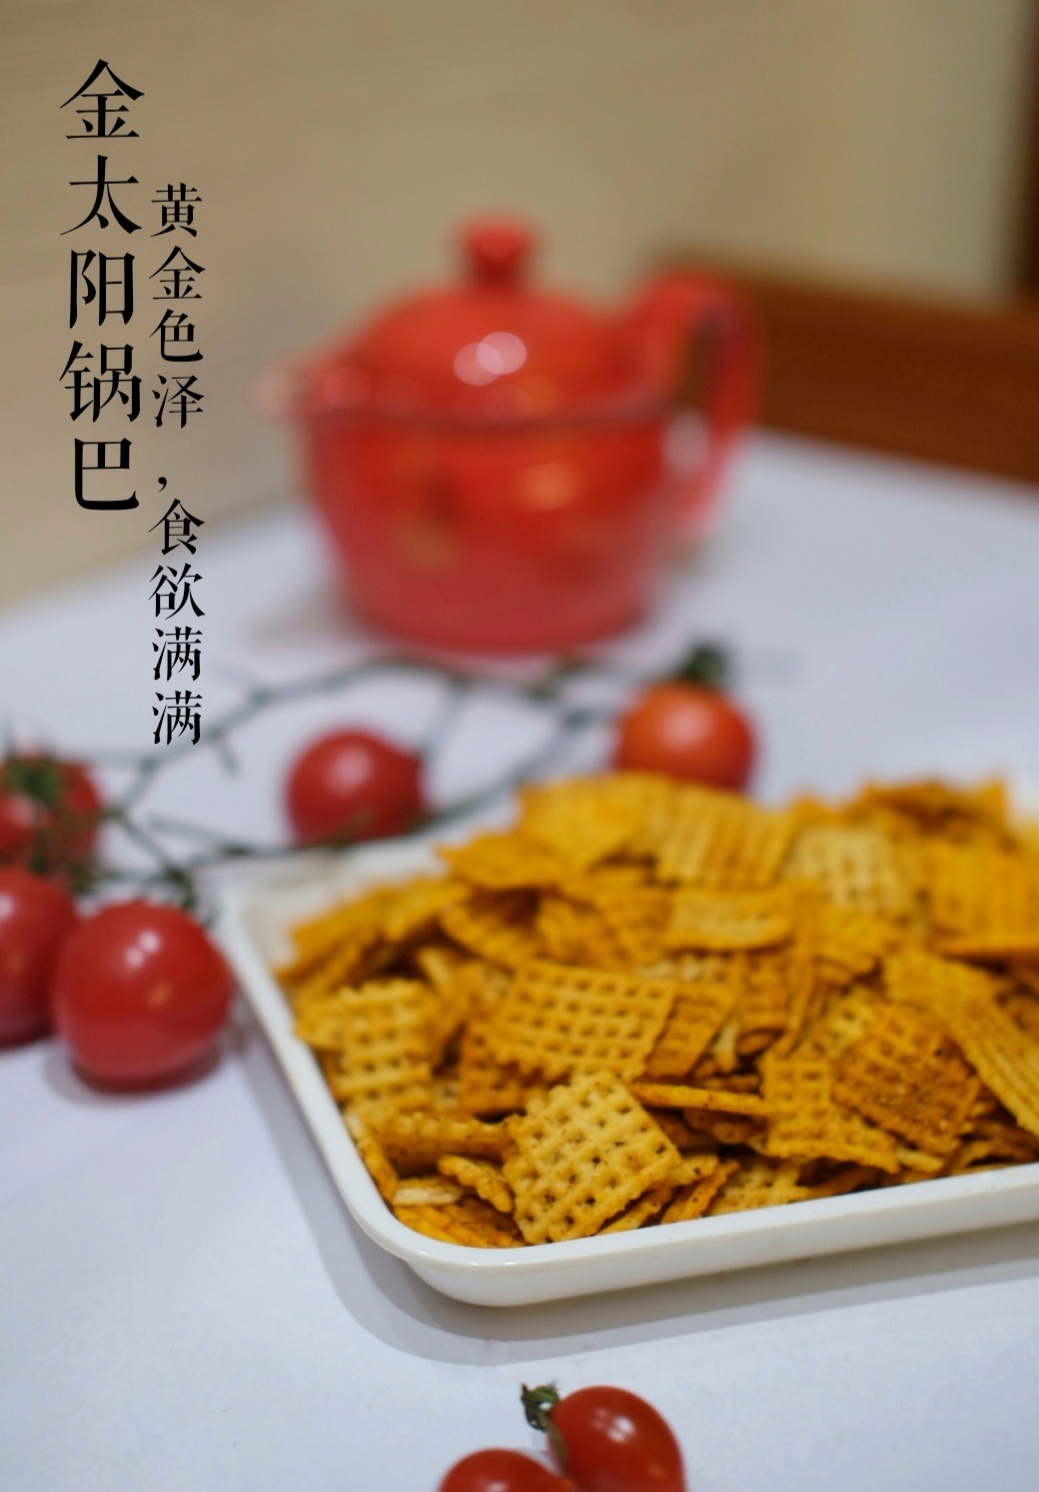 大米锅巴 休闲零食厂家直销 膨化 油炸食品4